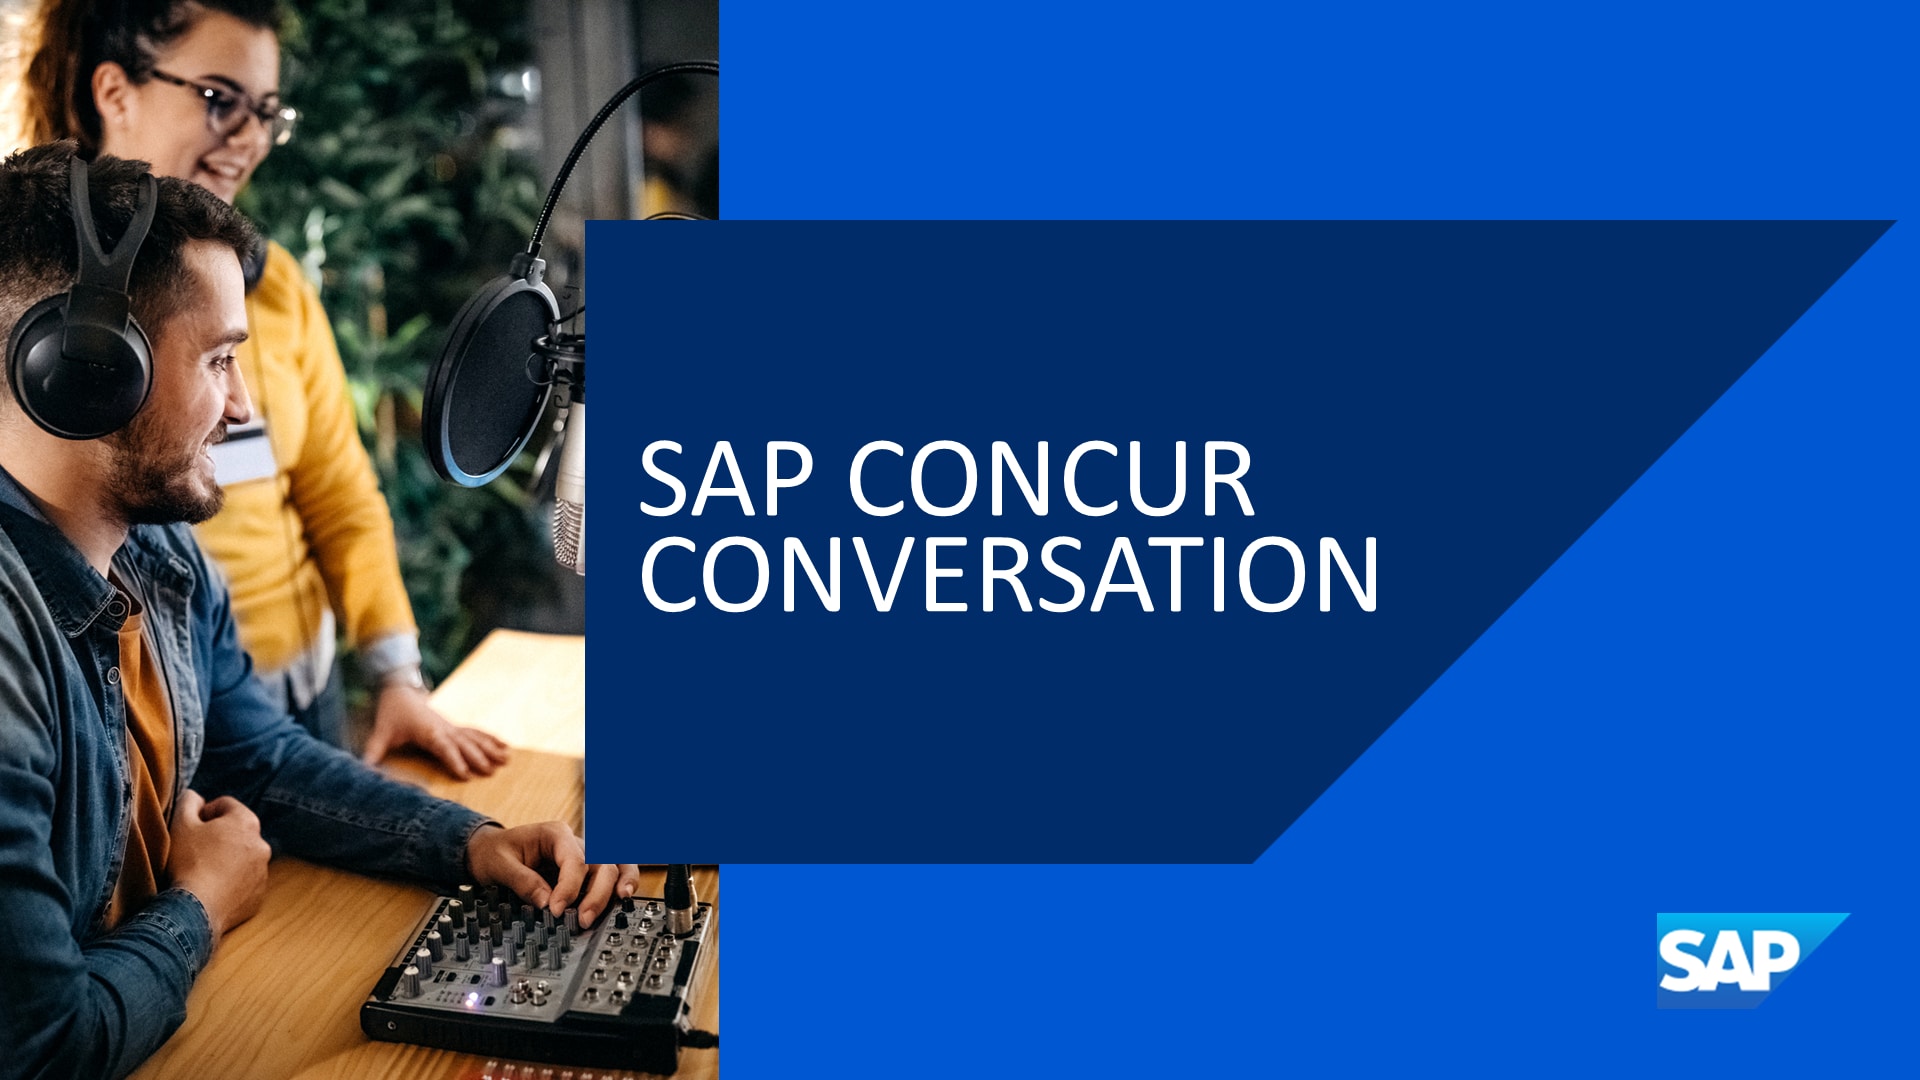 SAP Concur Conversations Podcast logo